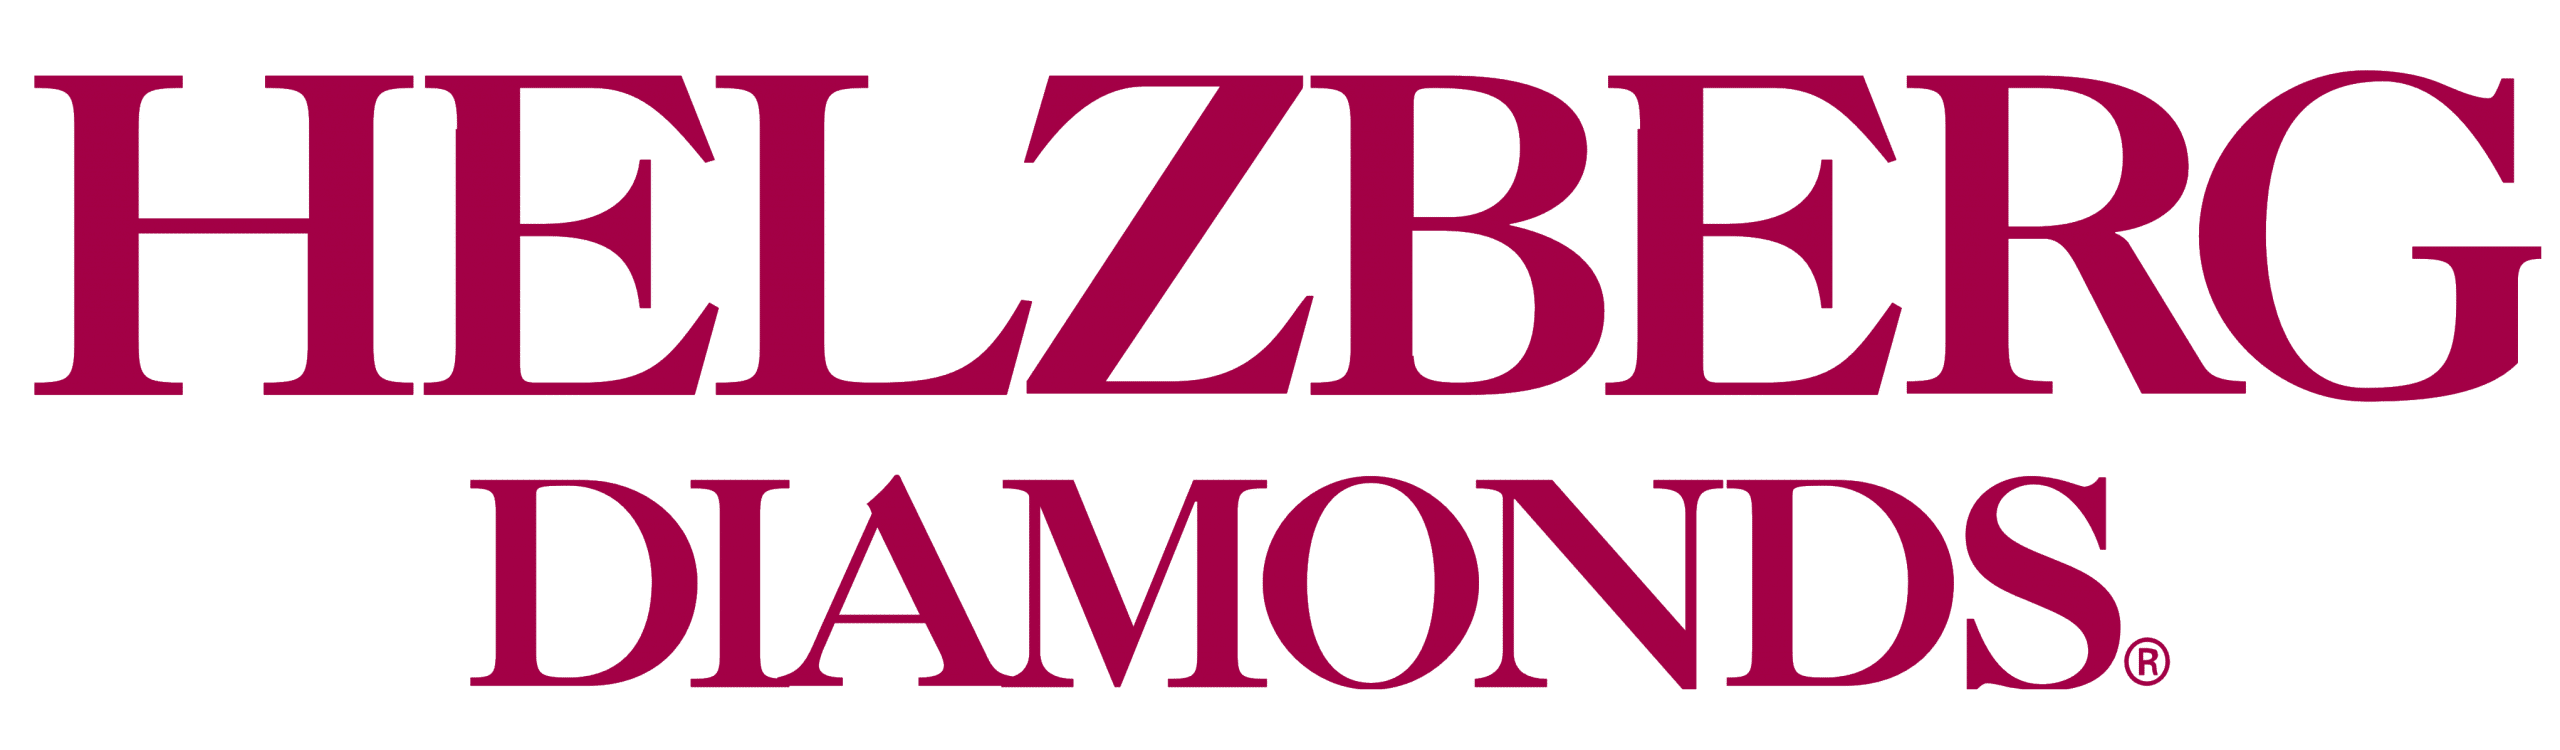 Logotipo de diamantes de Helzberg